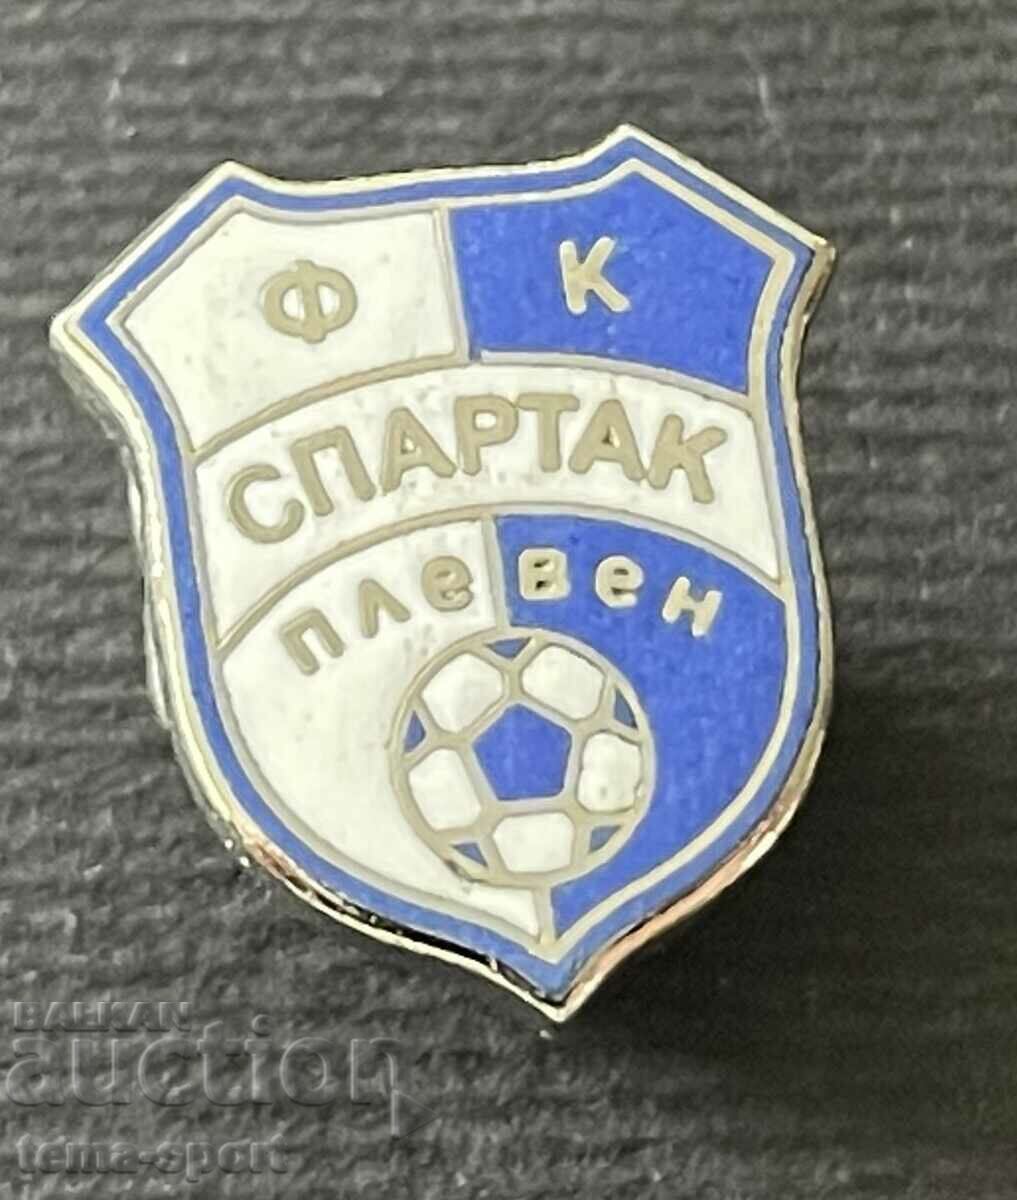 703 Bulgaria semnează emailul clubului de fotbal Spartak Pleven